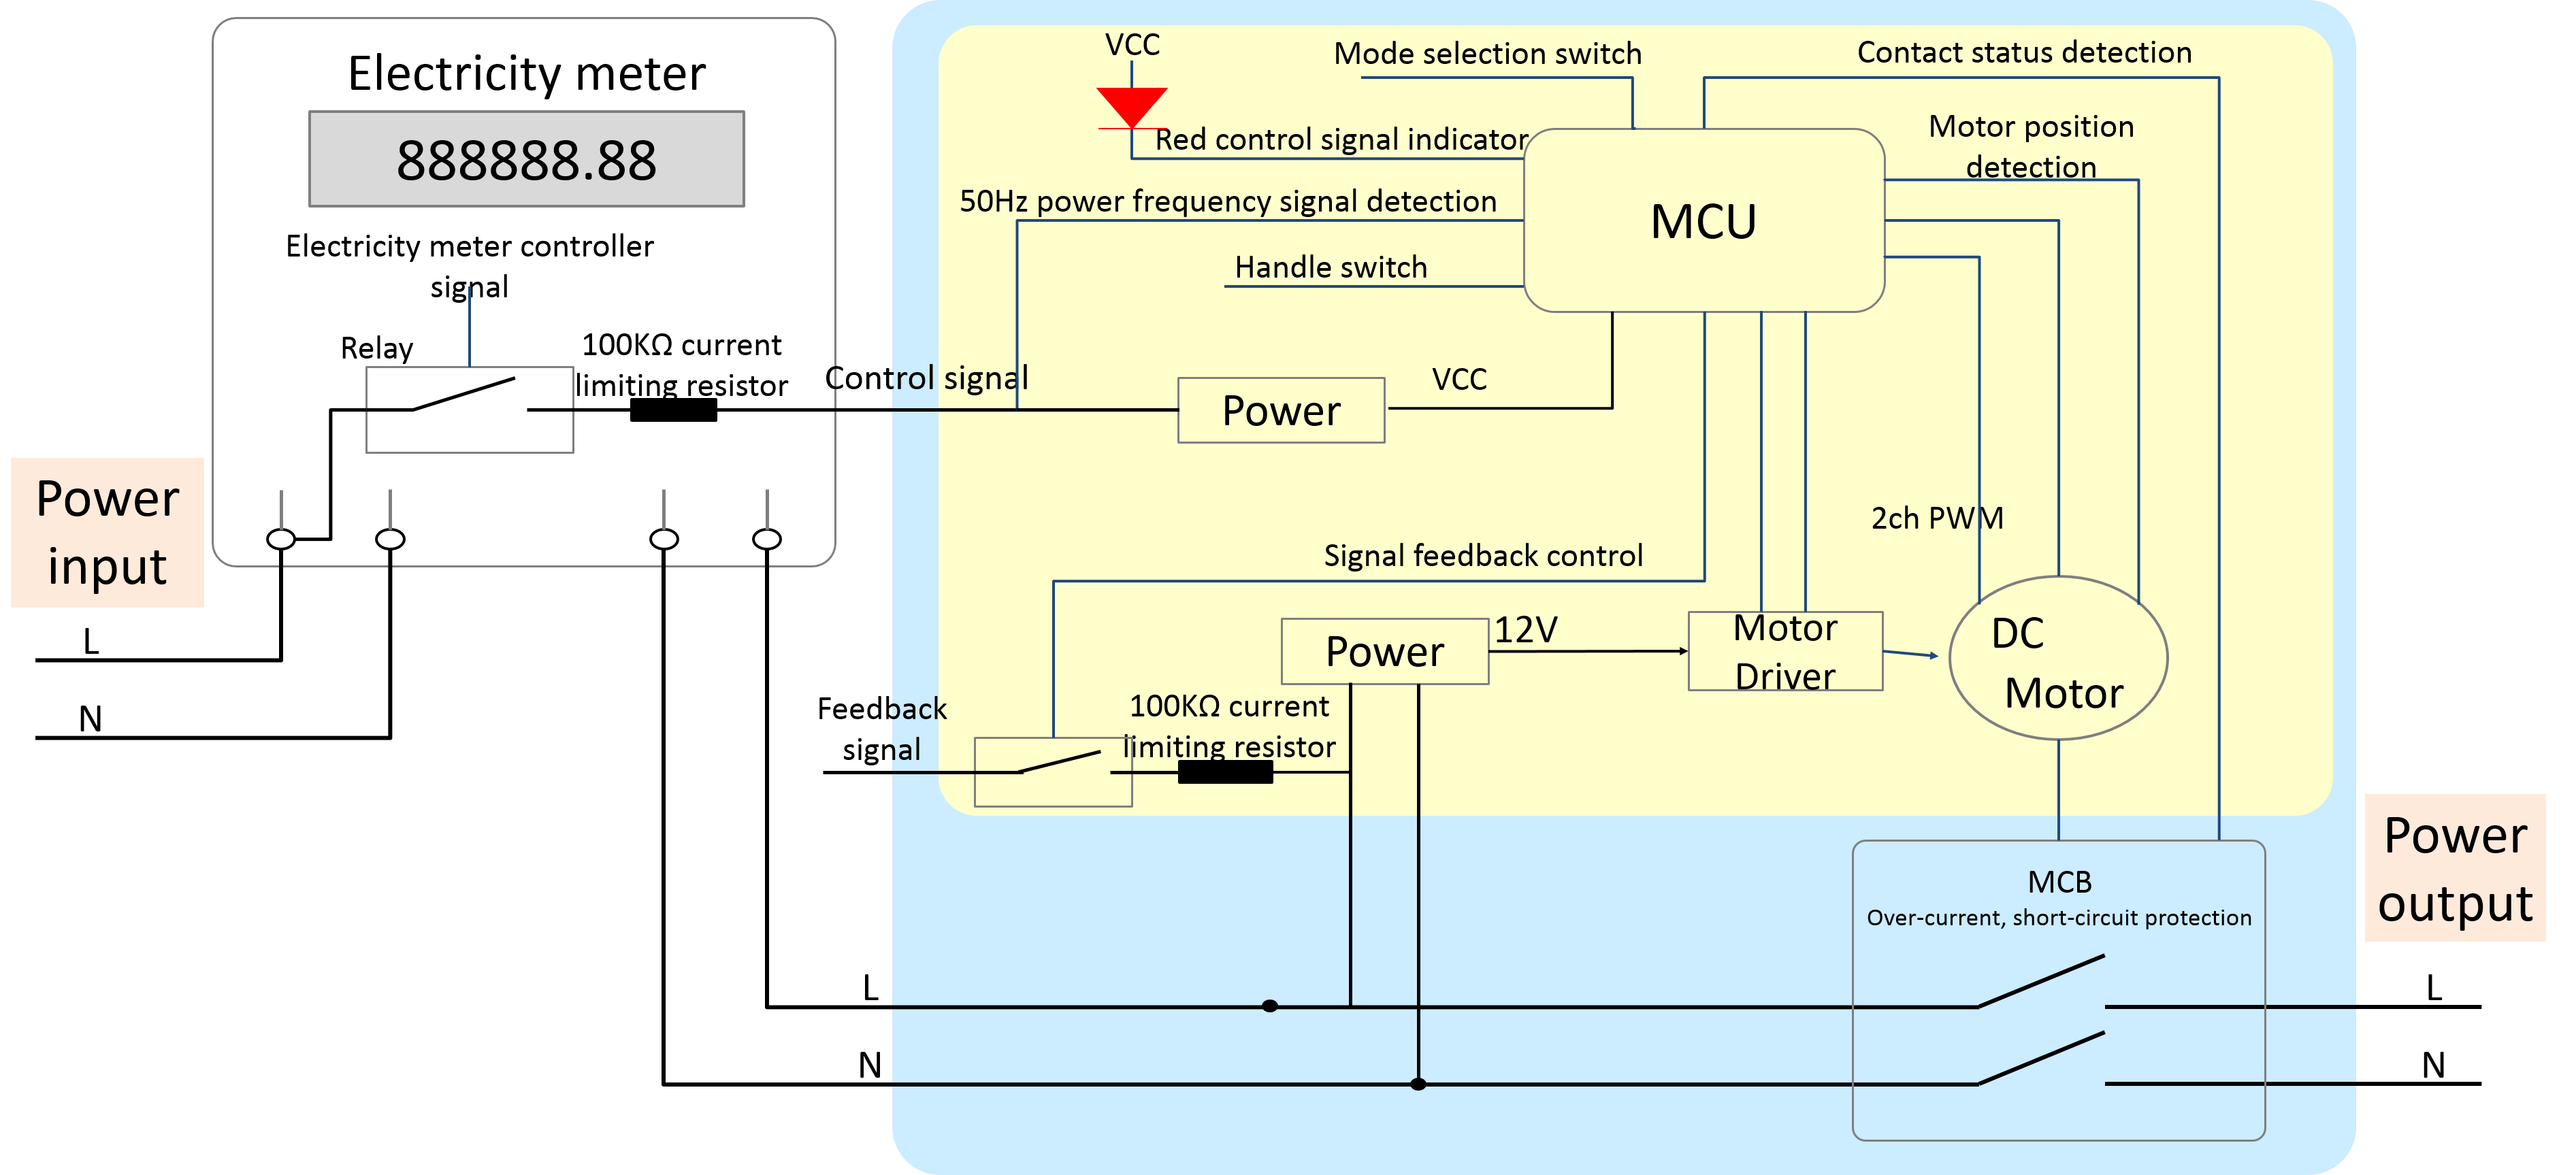 EN_External Circuit-breaker